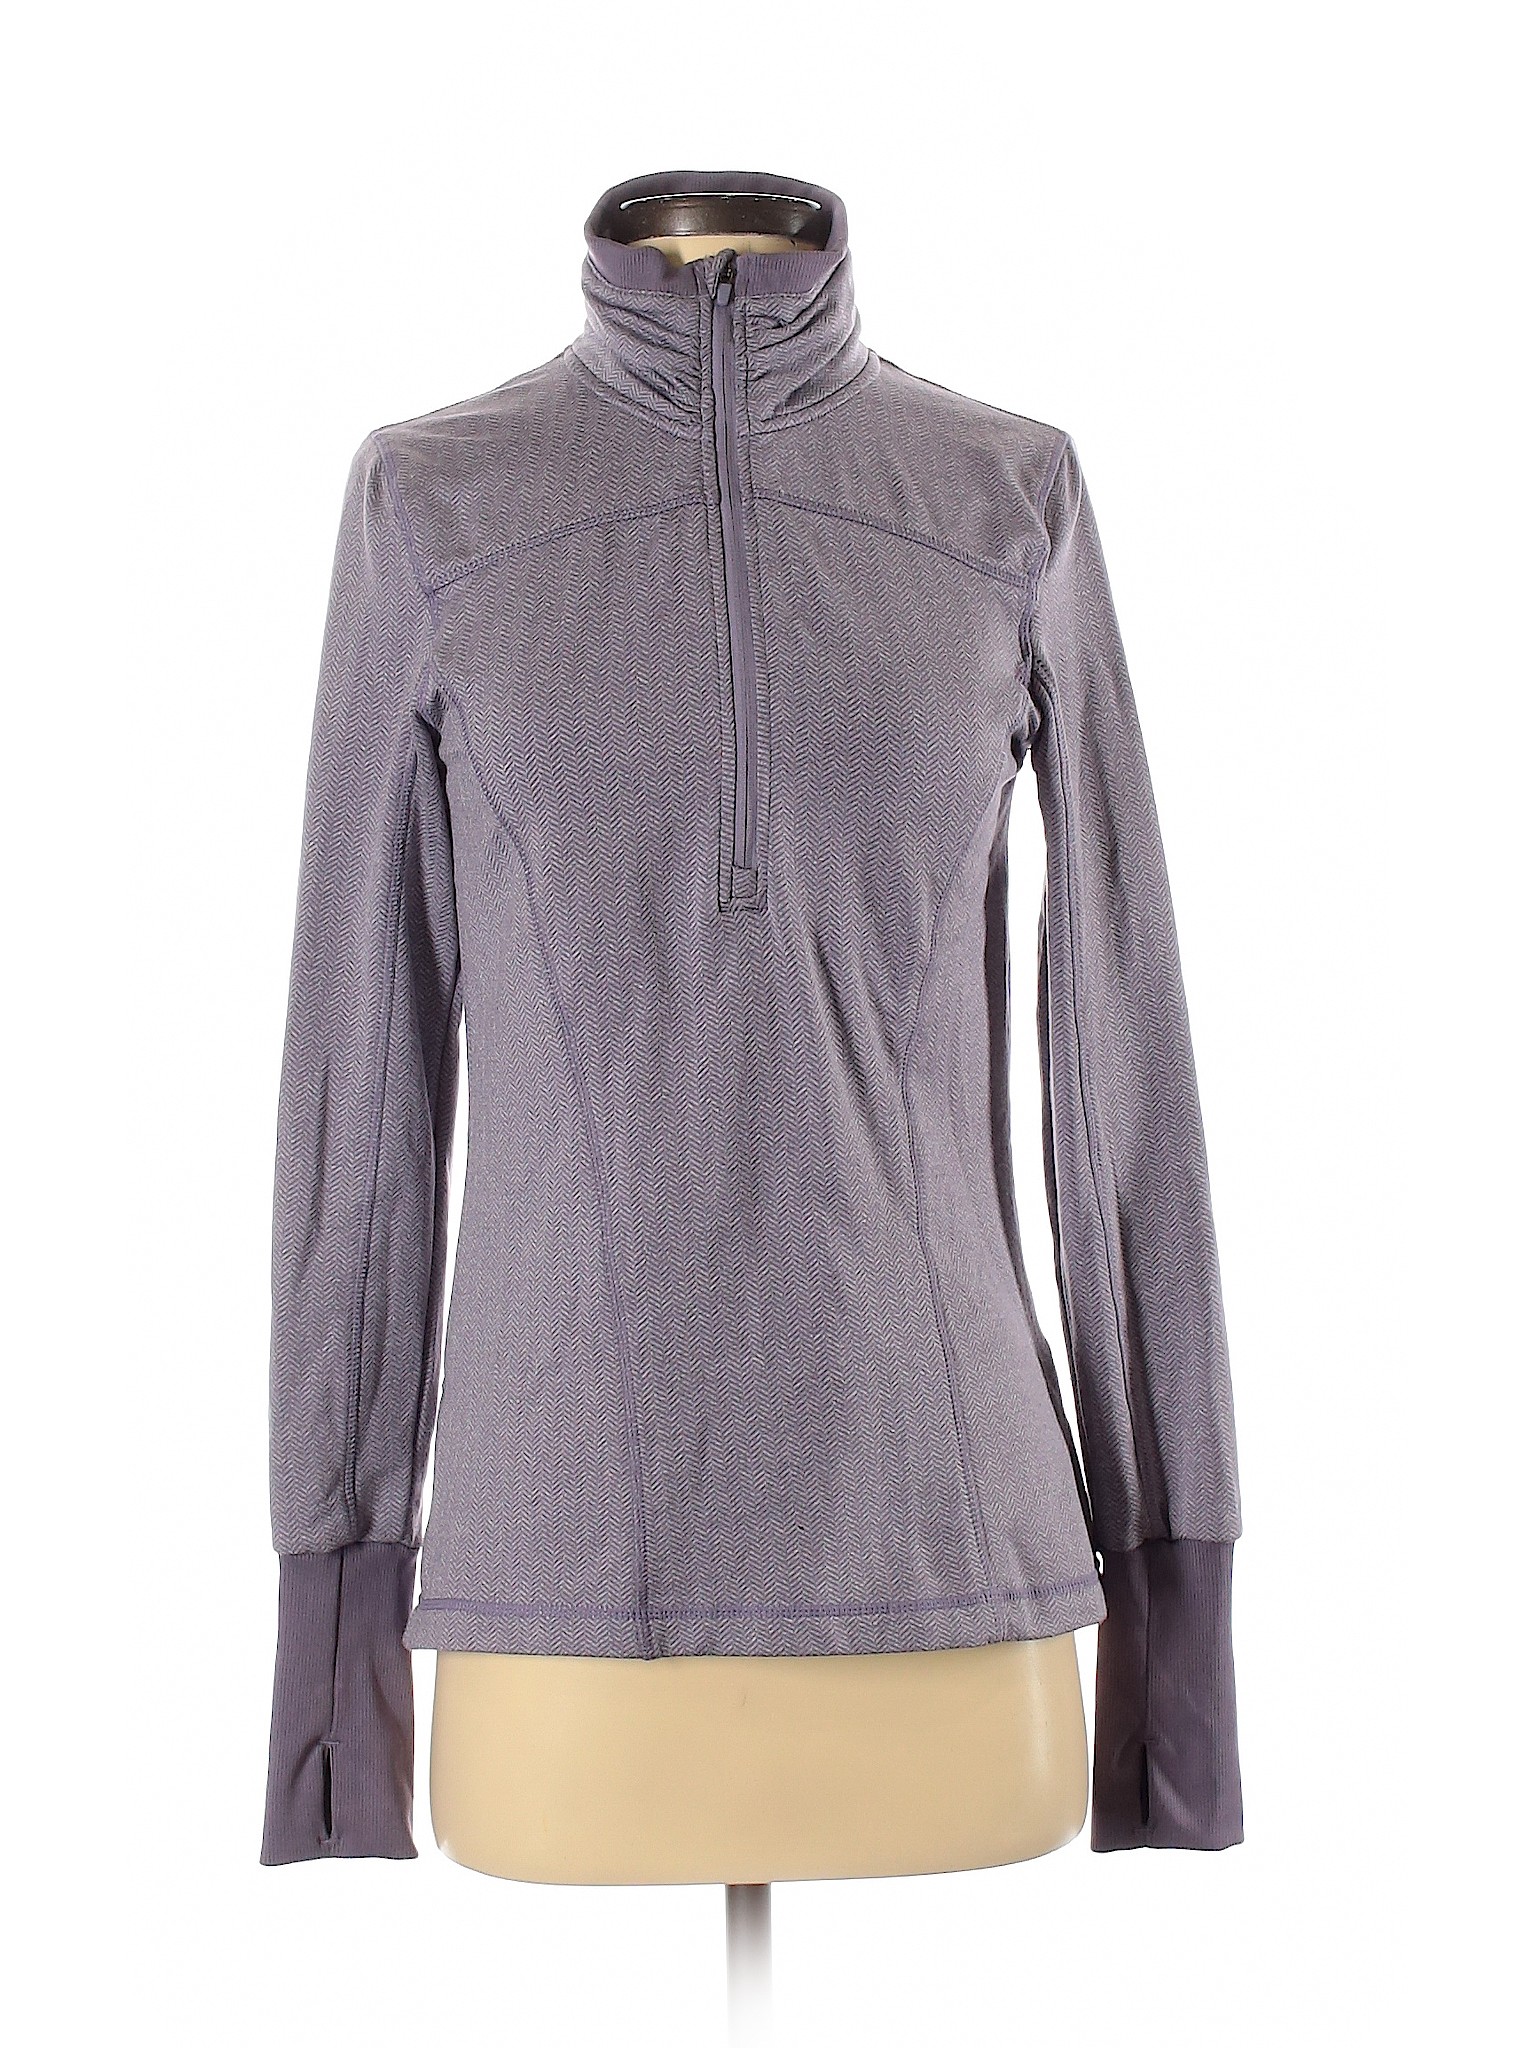 Mondetta Women Purple Track Jacket S | eBay